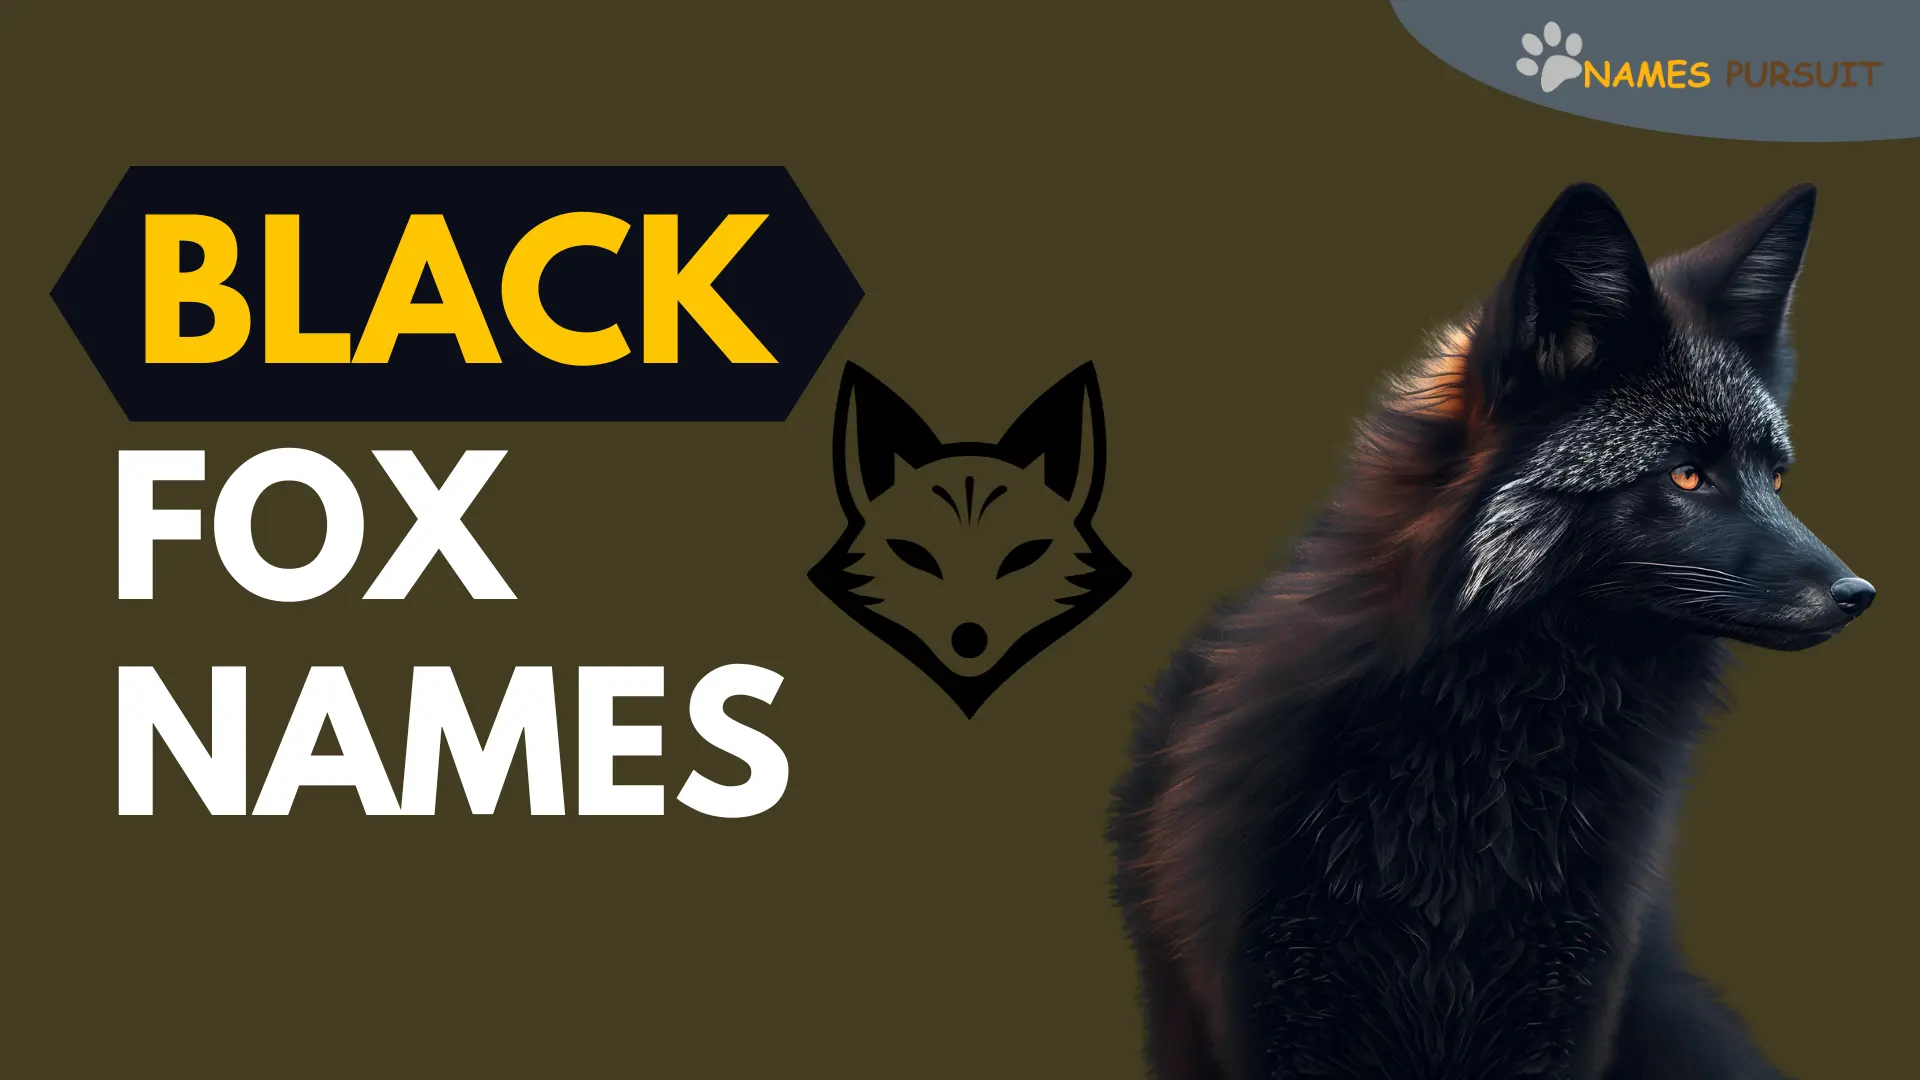 Black Fox Names